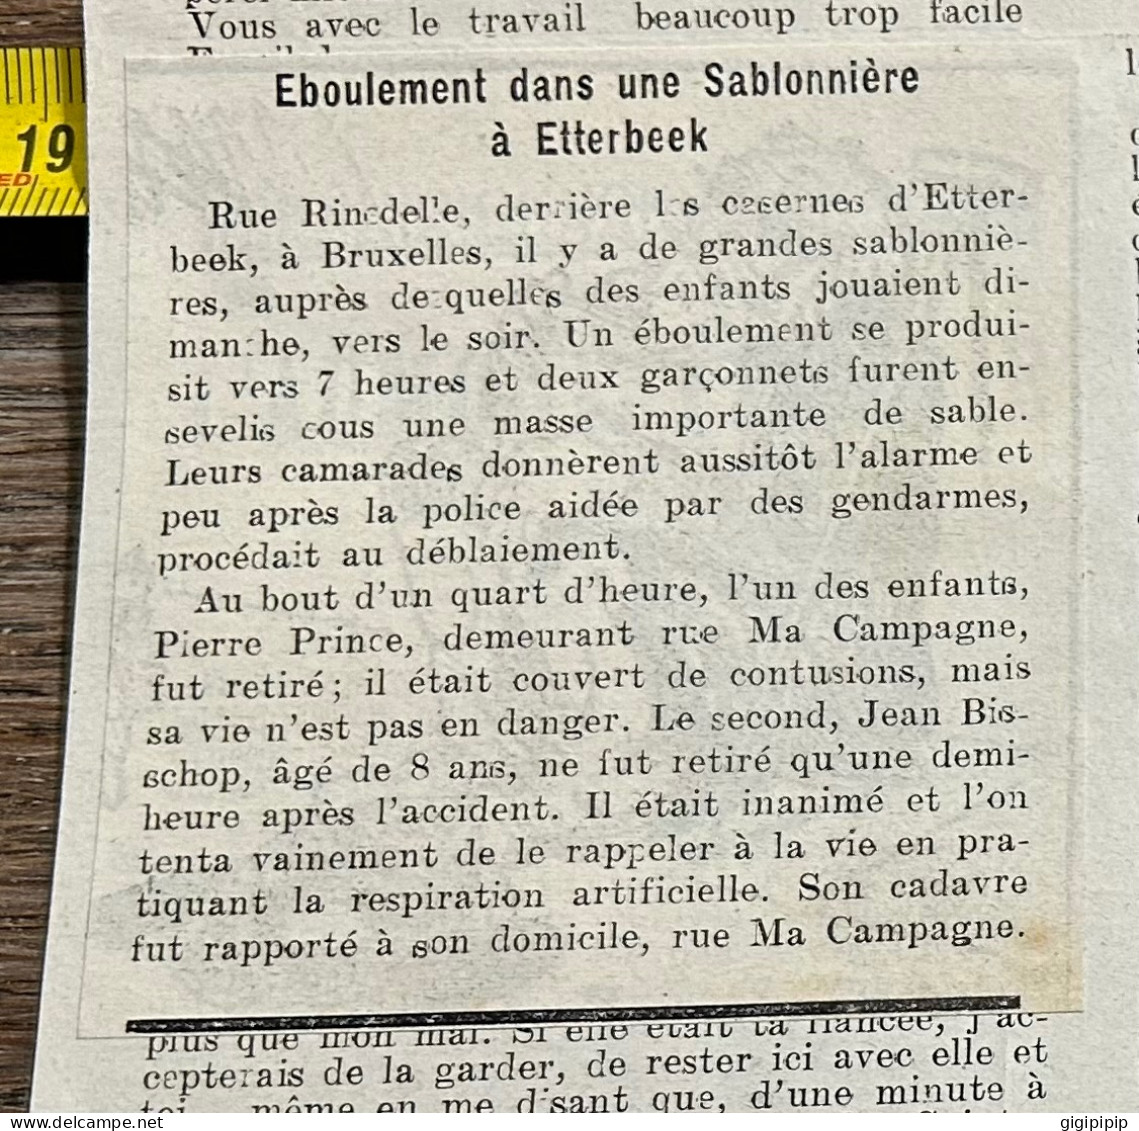 1908 PATI ÉBOULEMENT AUX SABLONNIÈRES D'ETTERBEEK. -- DEUX ENFANTS ENSEVELIS Pierre Prince Jean Bisschop, - Collections